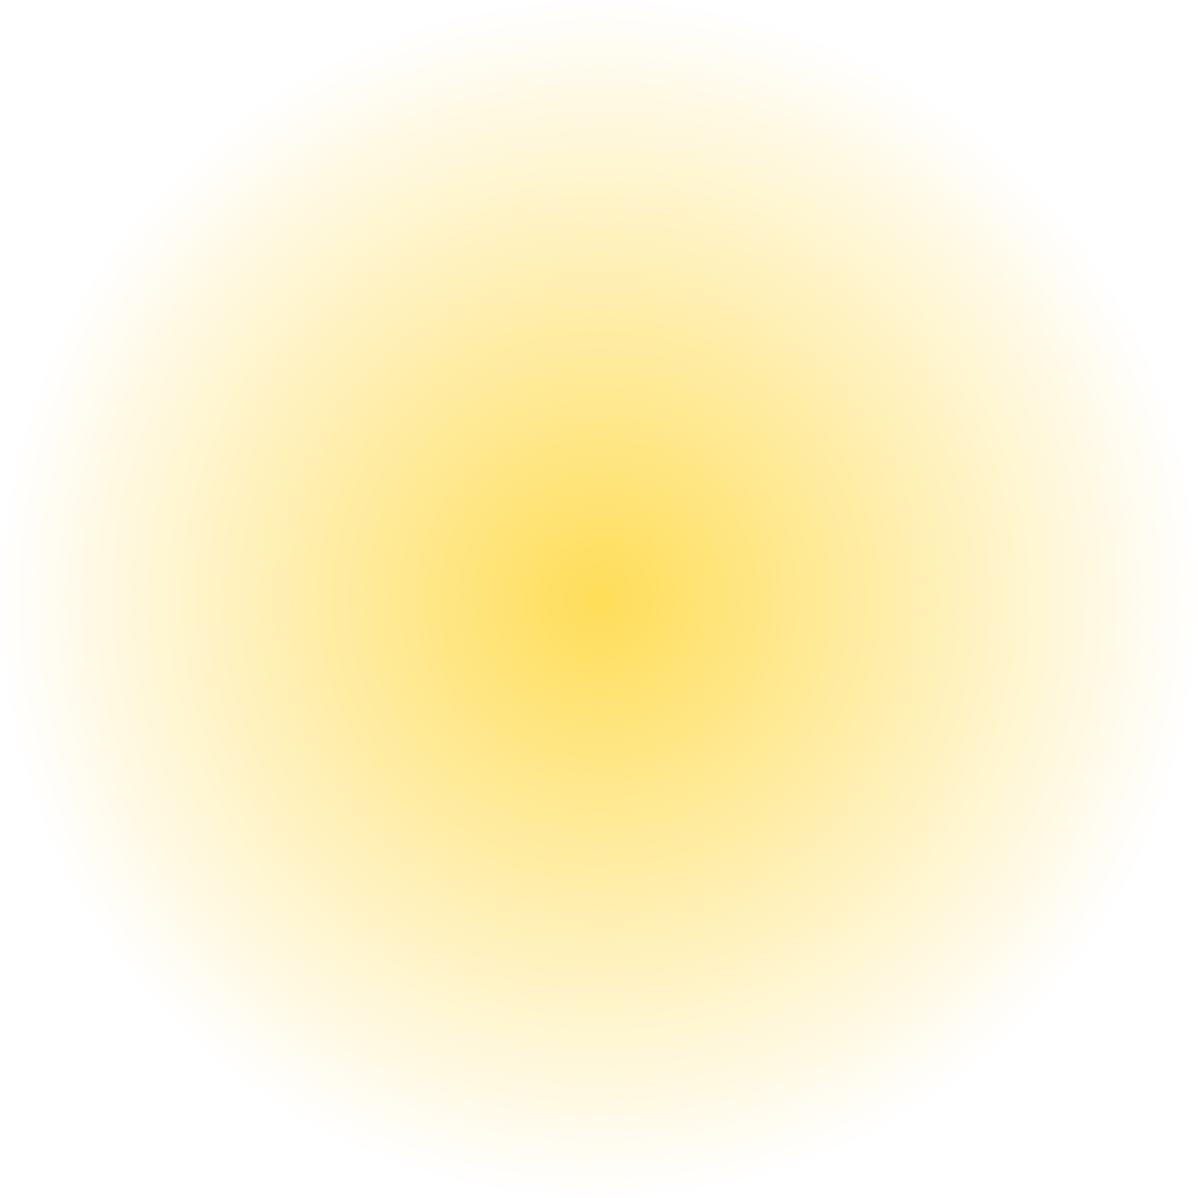 Yellow blur circle. Neon round frame. Shining circle banner.